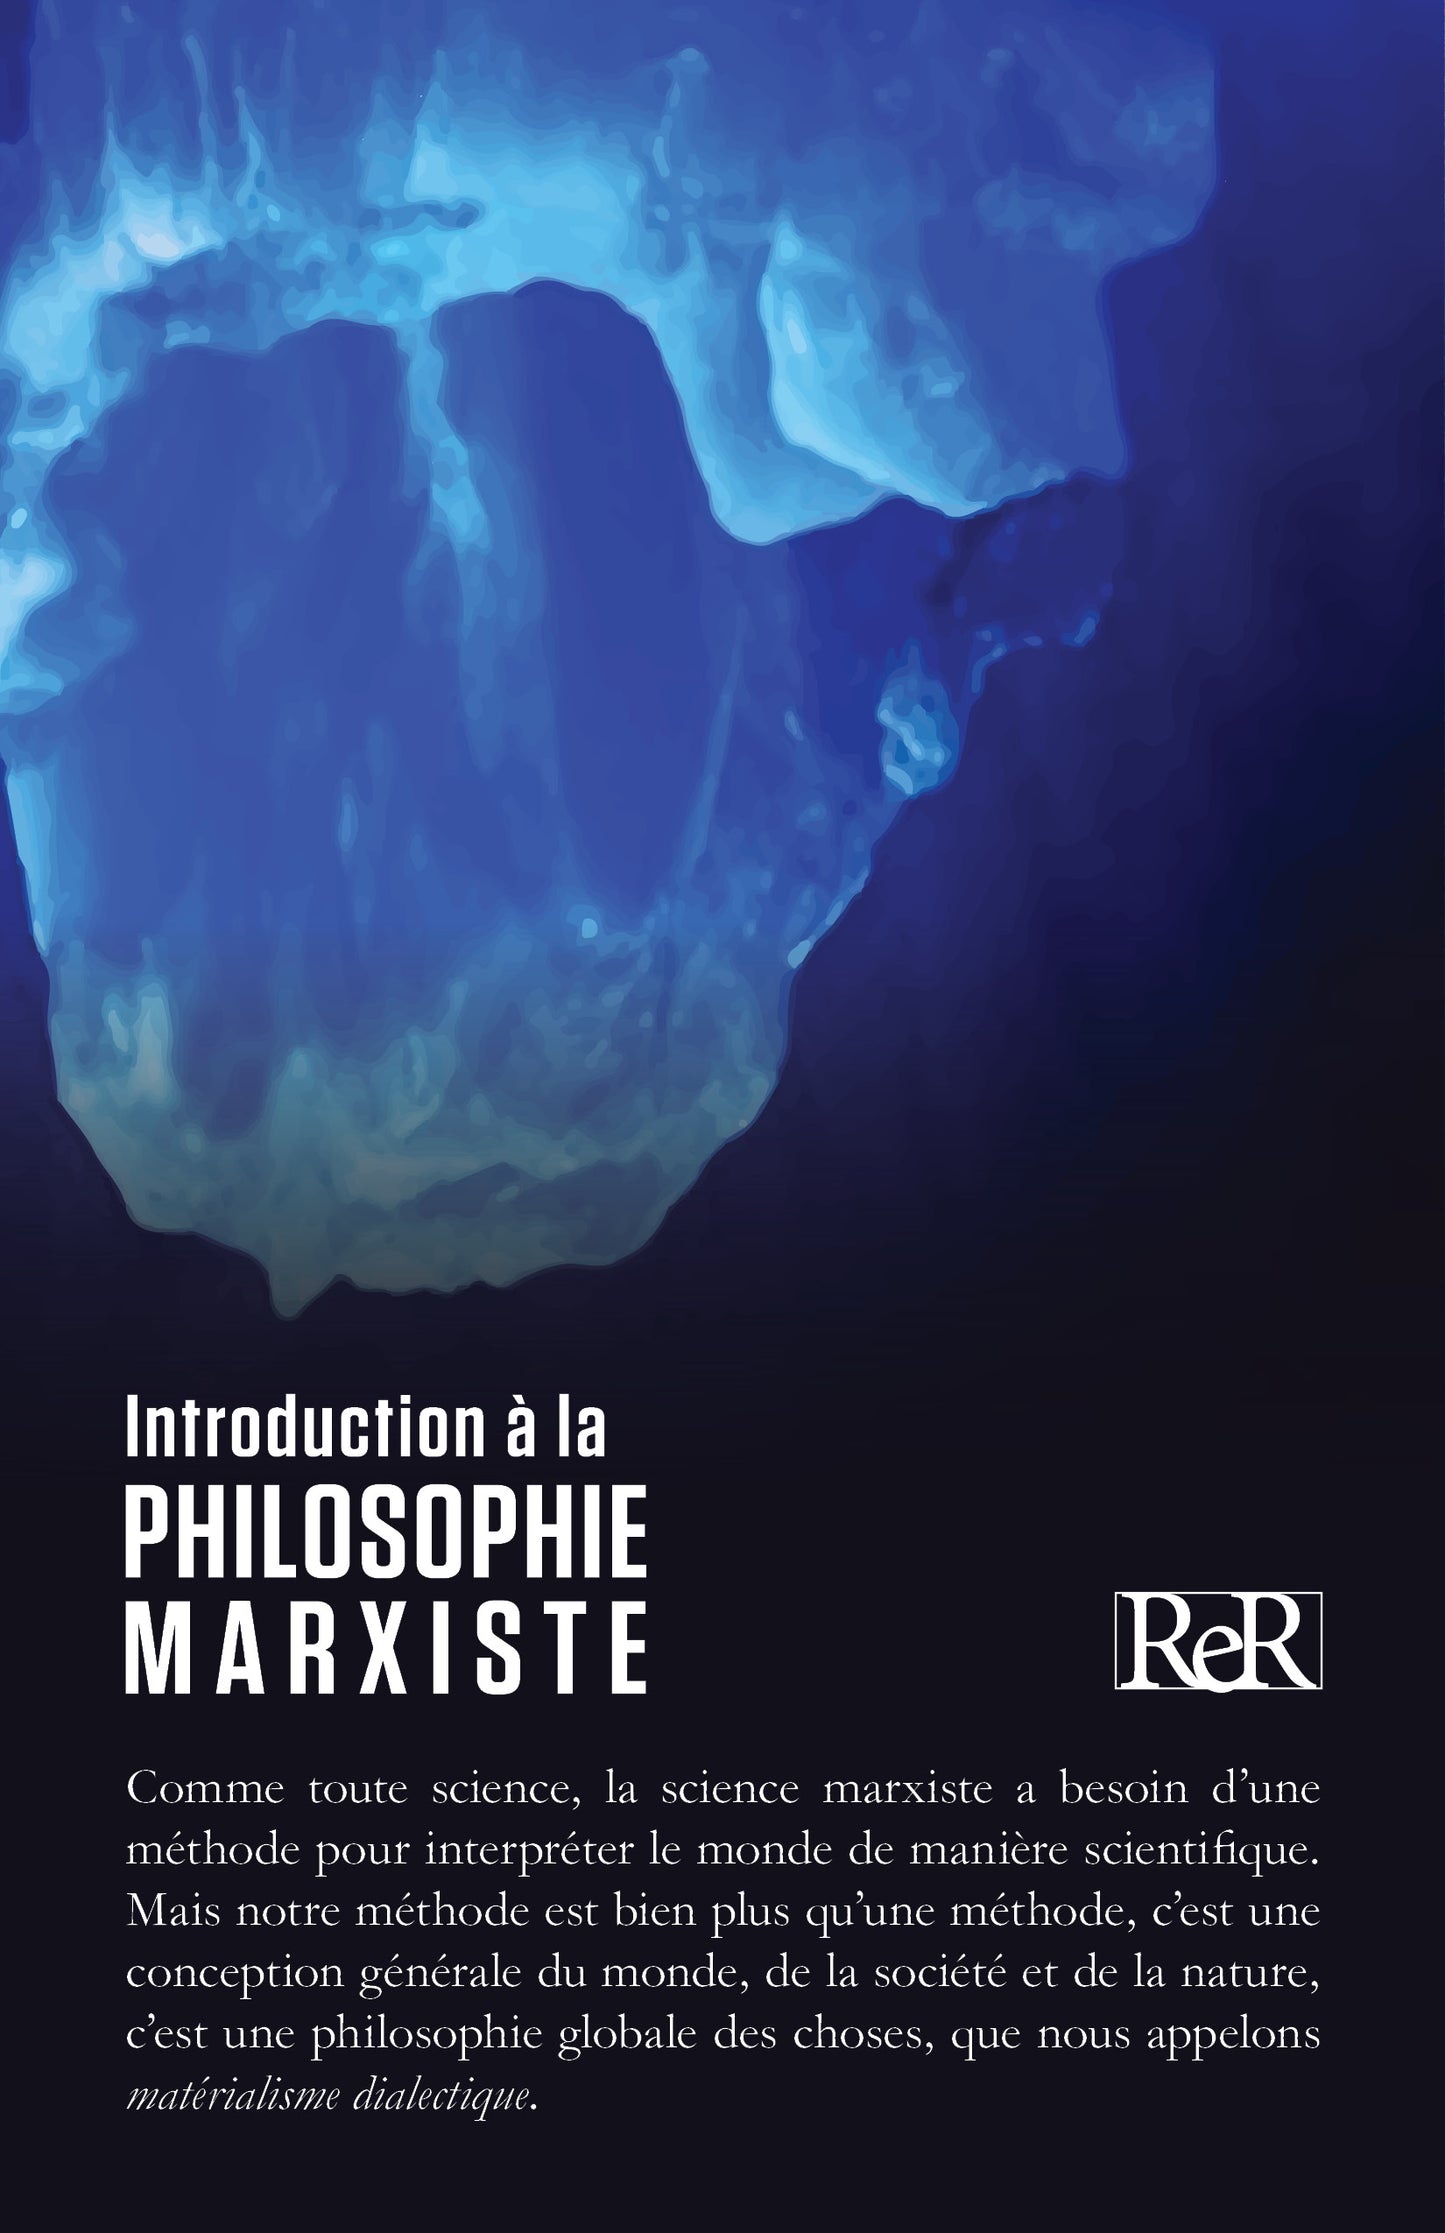 Introduction au marxisme #4: Introduction à la philosophie marxiste